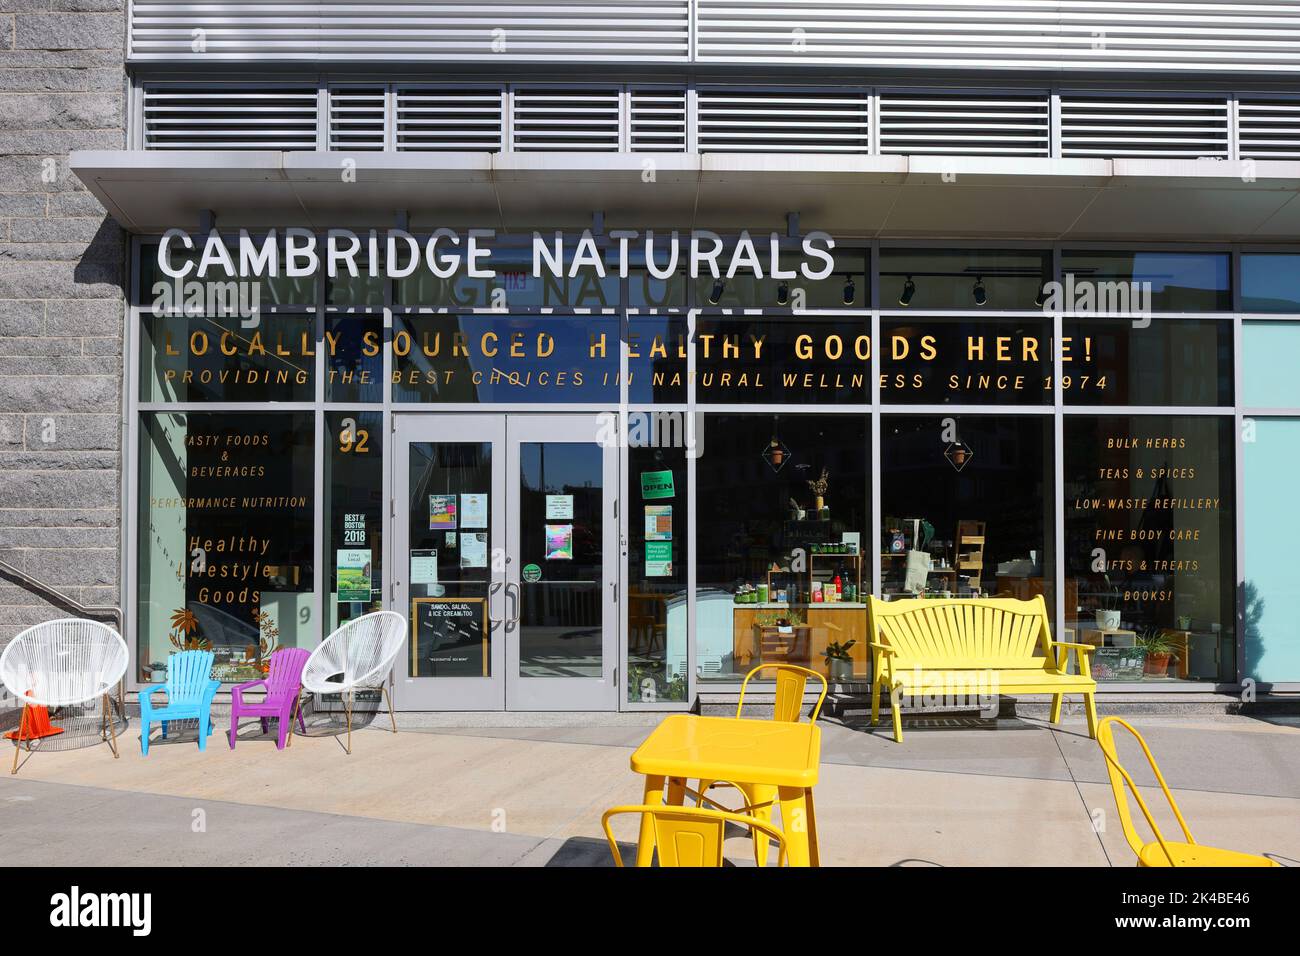 Cambridge Naturals, 92 Guest St, Boston photo d'un magasin de santé et de bien-être à Boston Landing. brighton, massachusetts. Banque D'Images